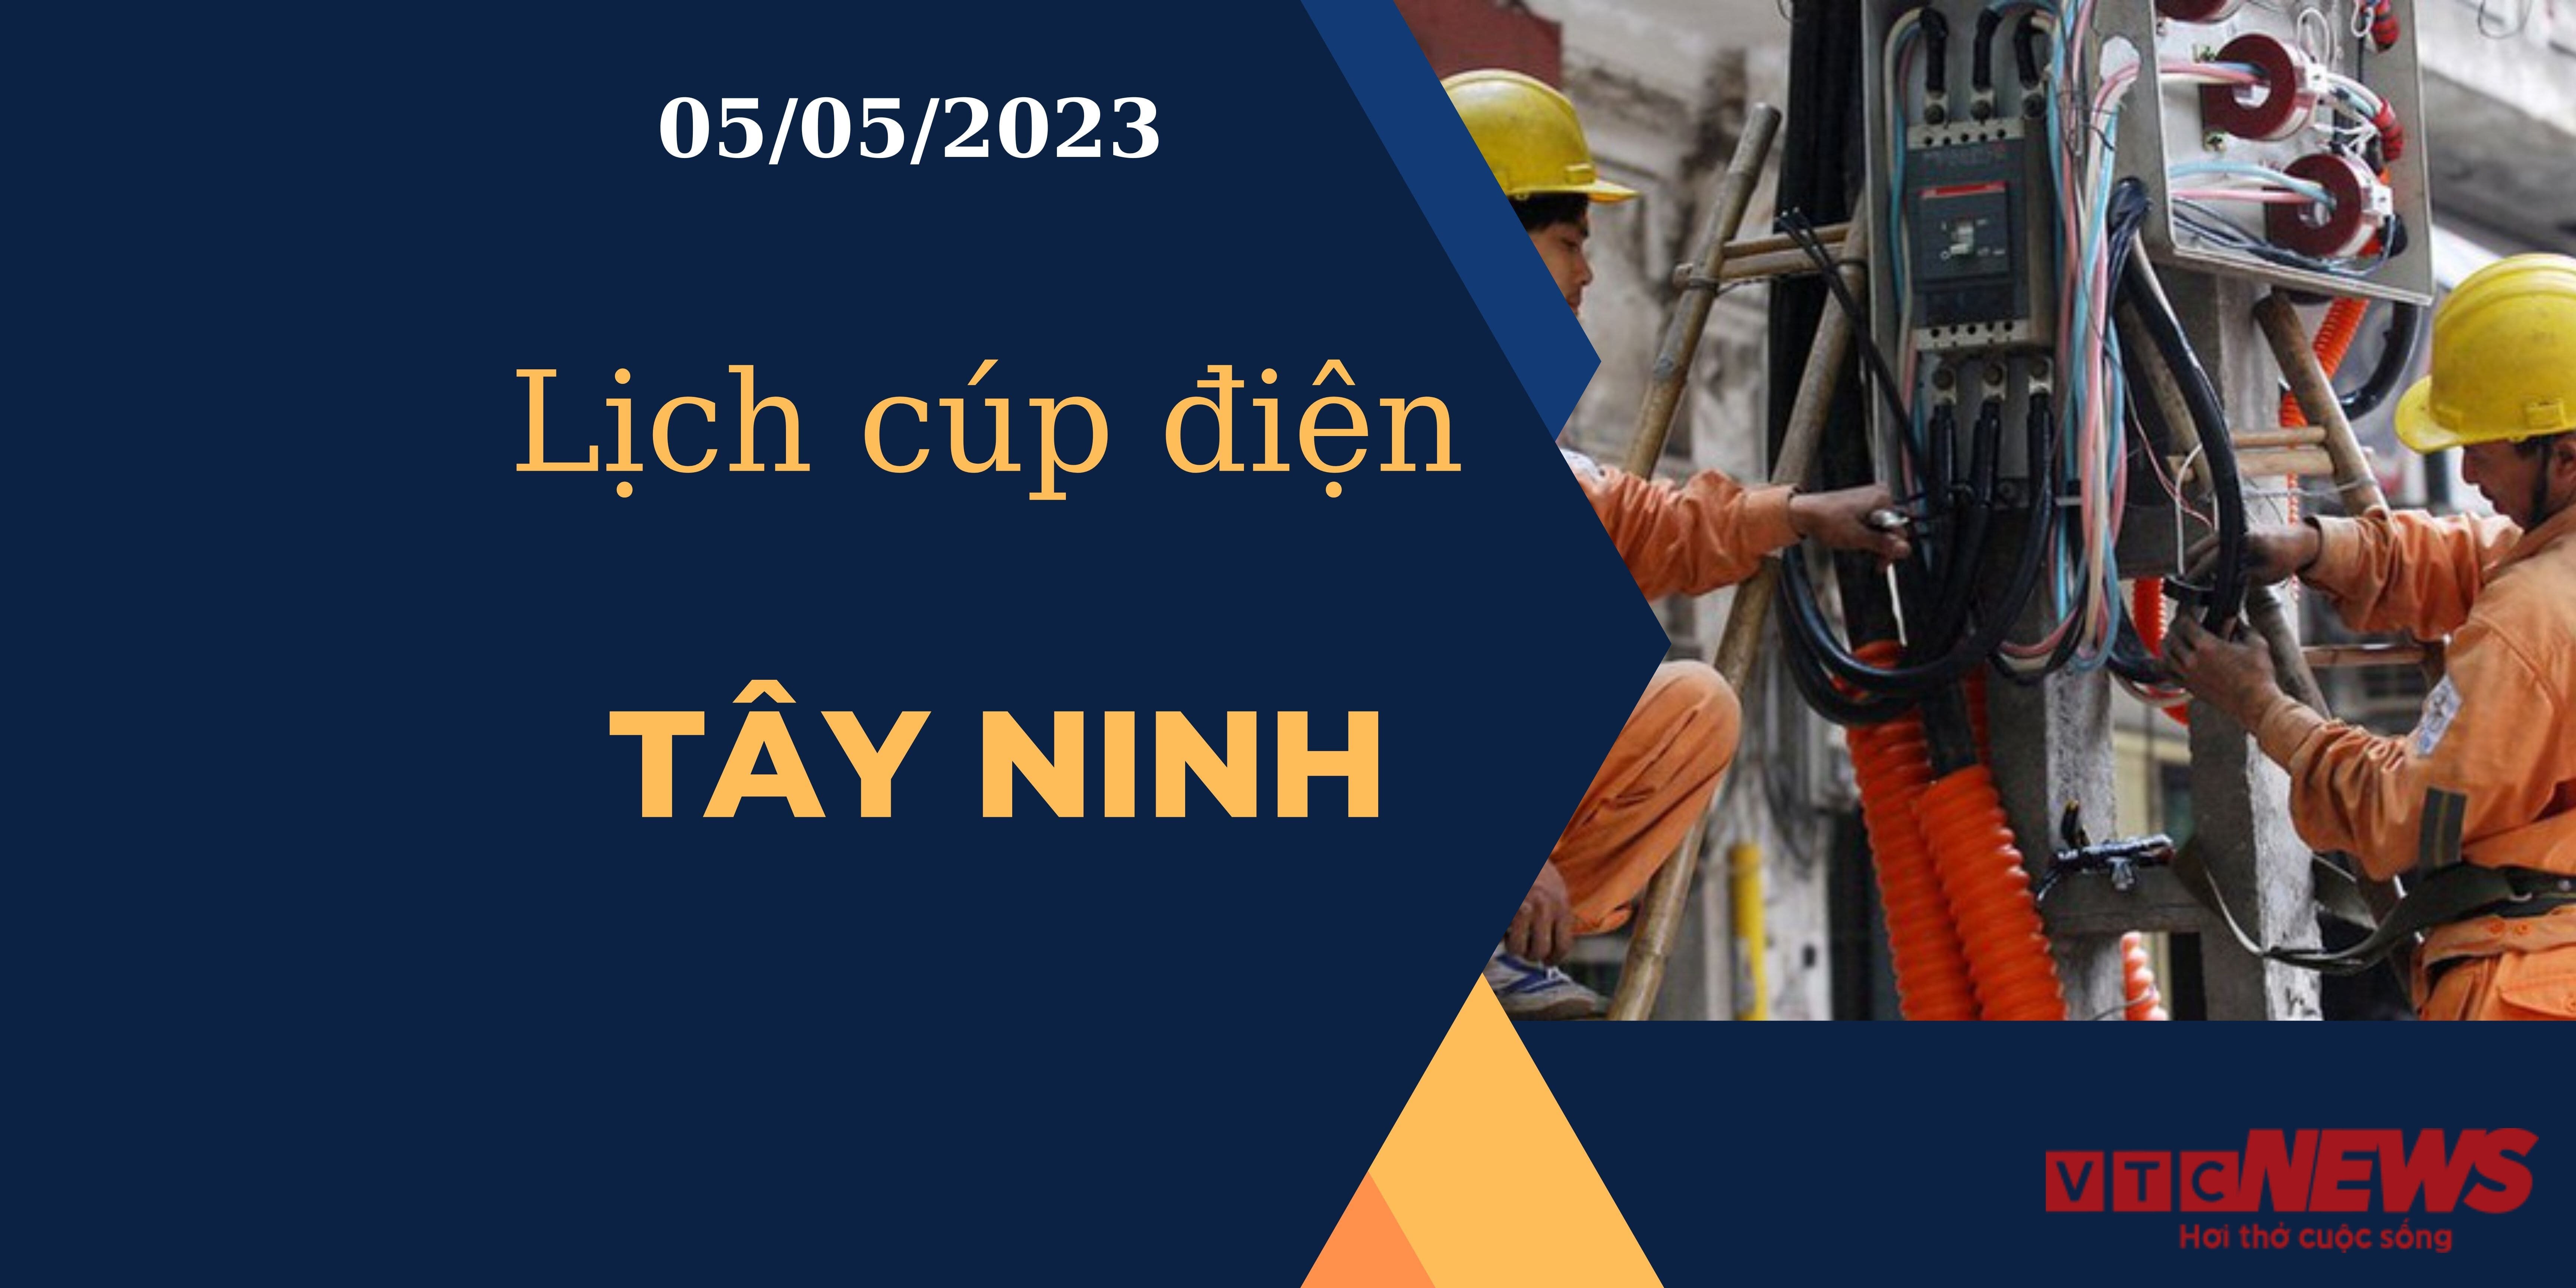 Lịch cúp điện hôm nay tại  Tây Ninh ngày 05/05/2023 - 1